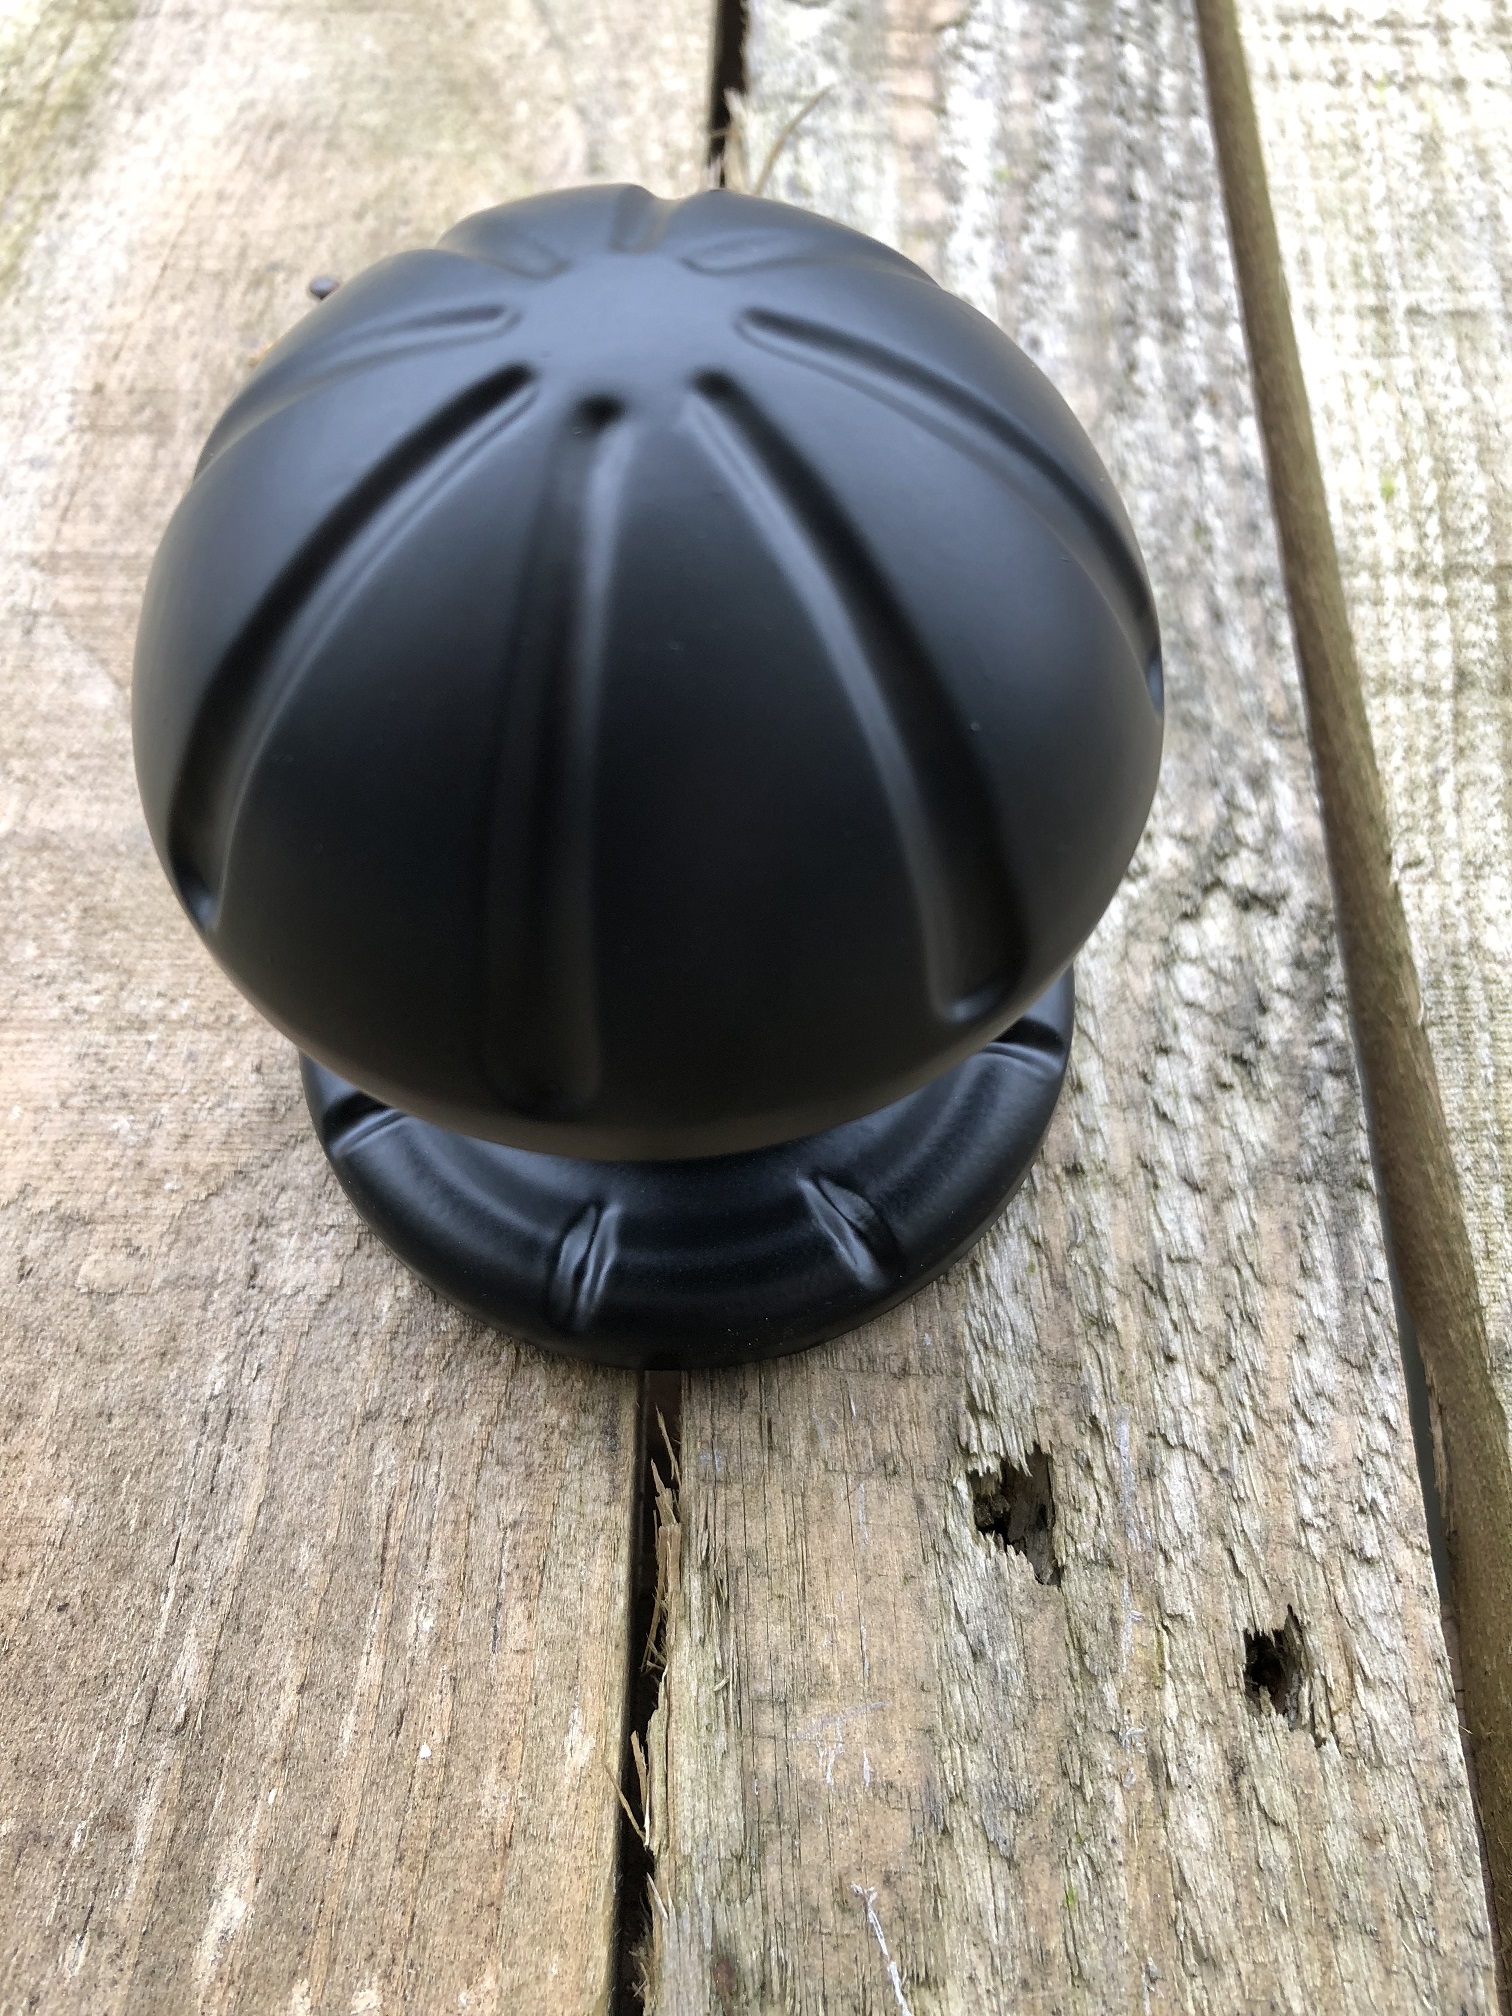 Mooie zwarte forse deurknop, metaal zwart met voetrozet zwart. (vast staand)